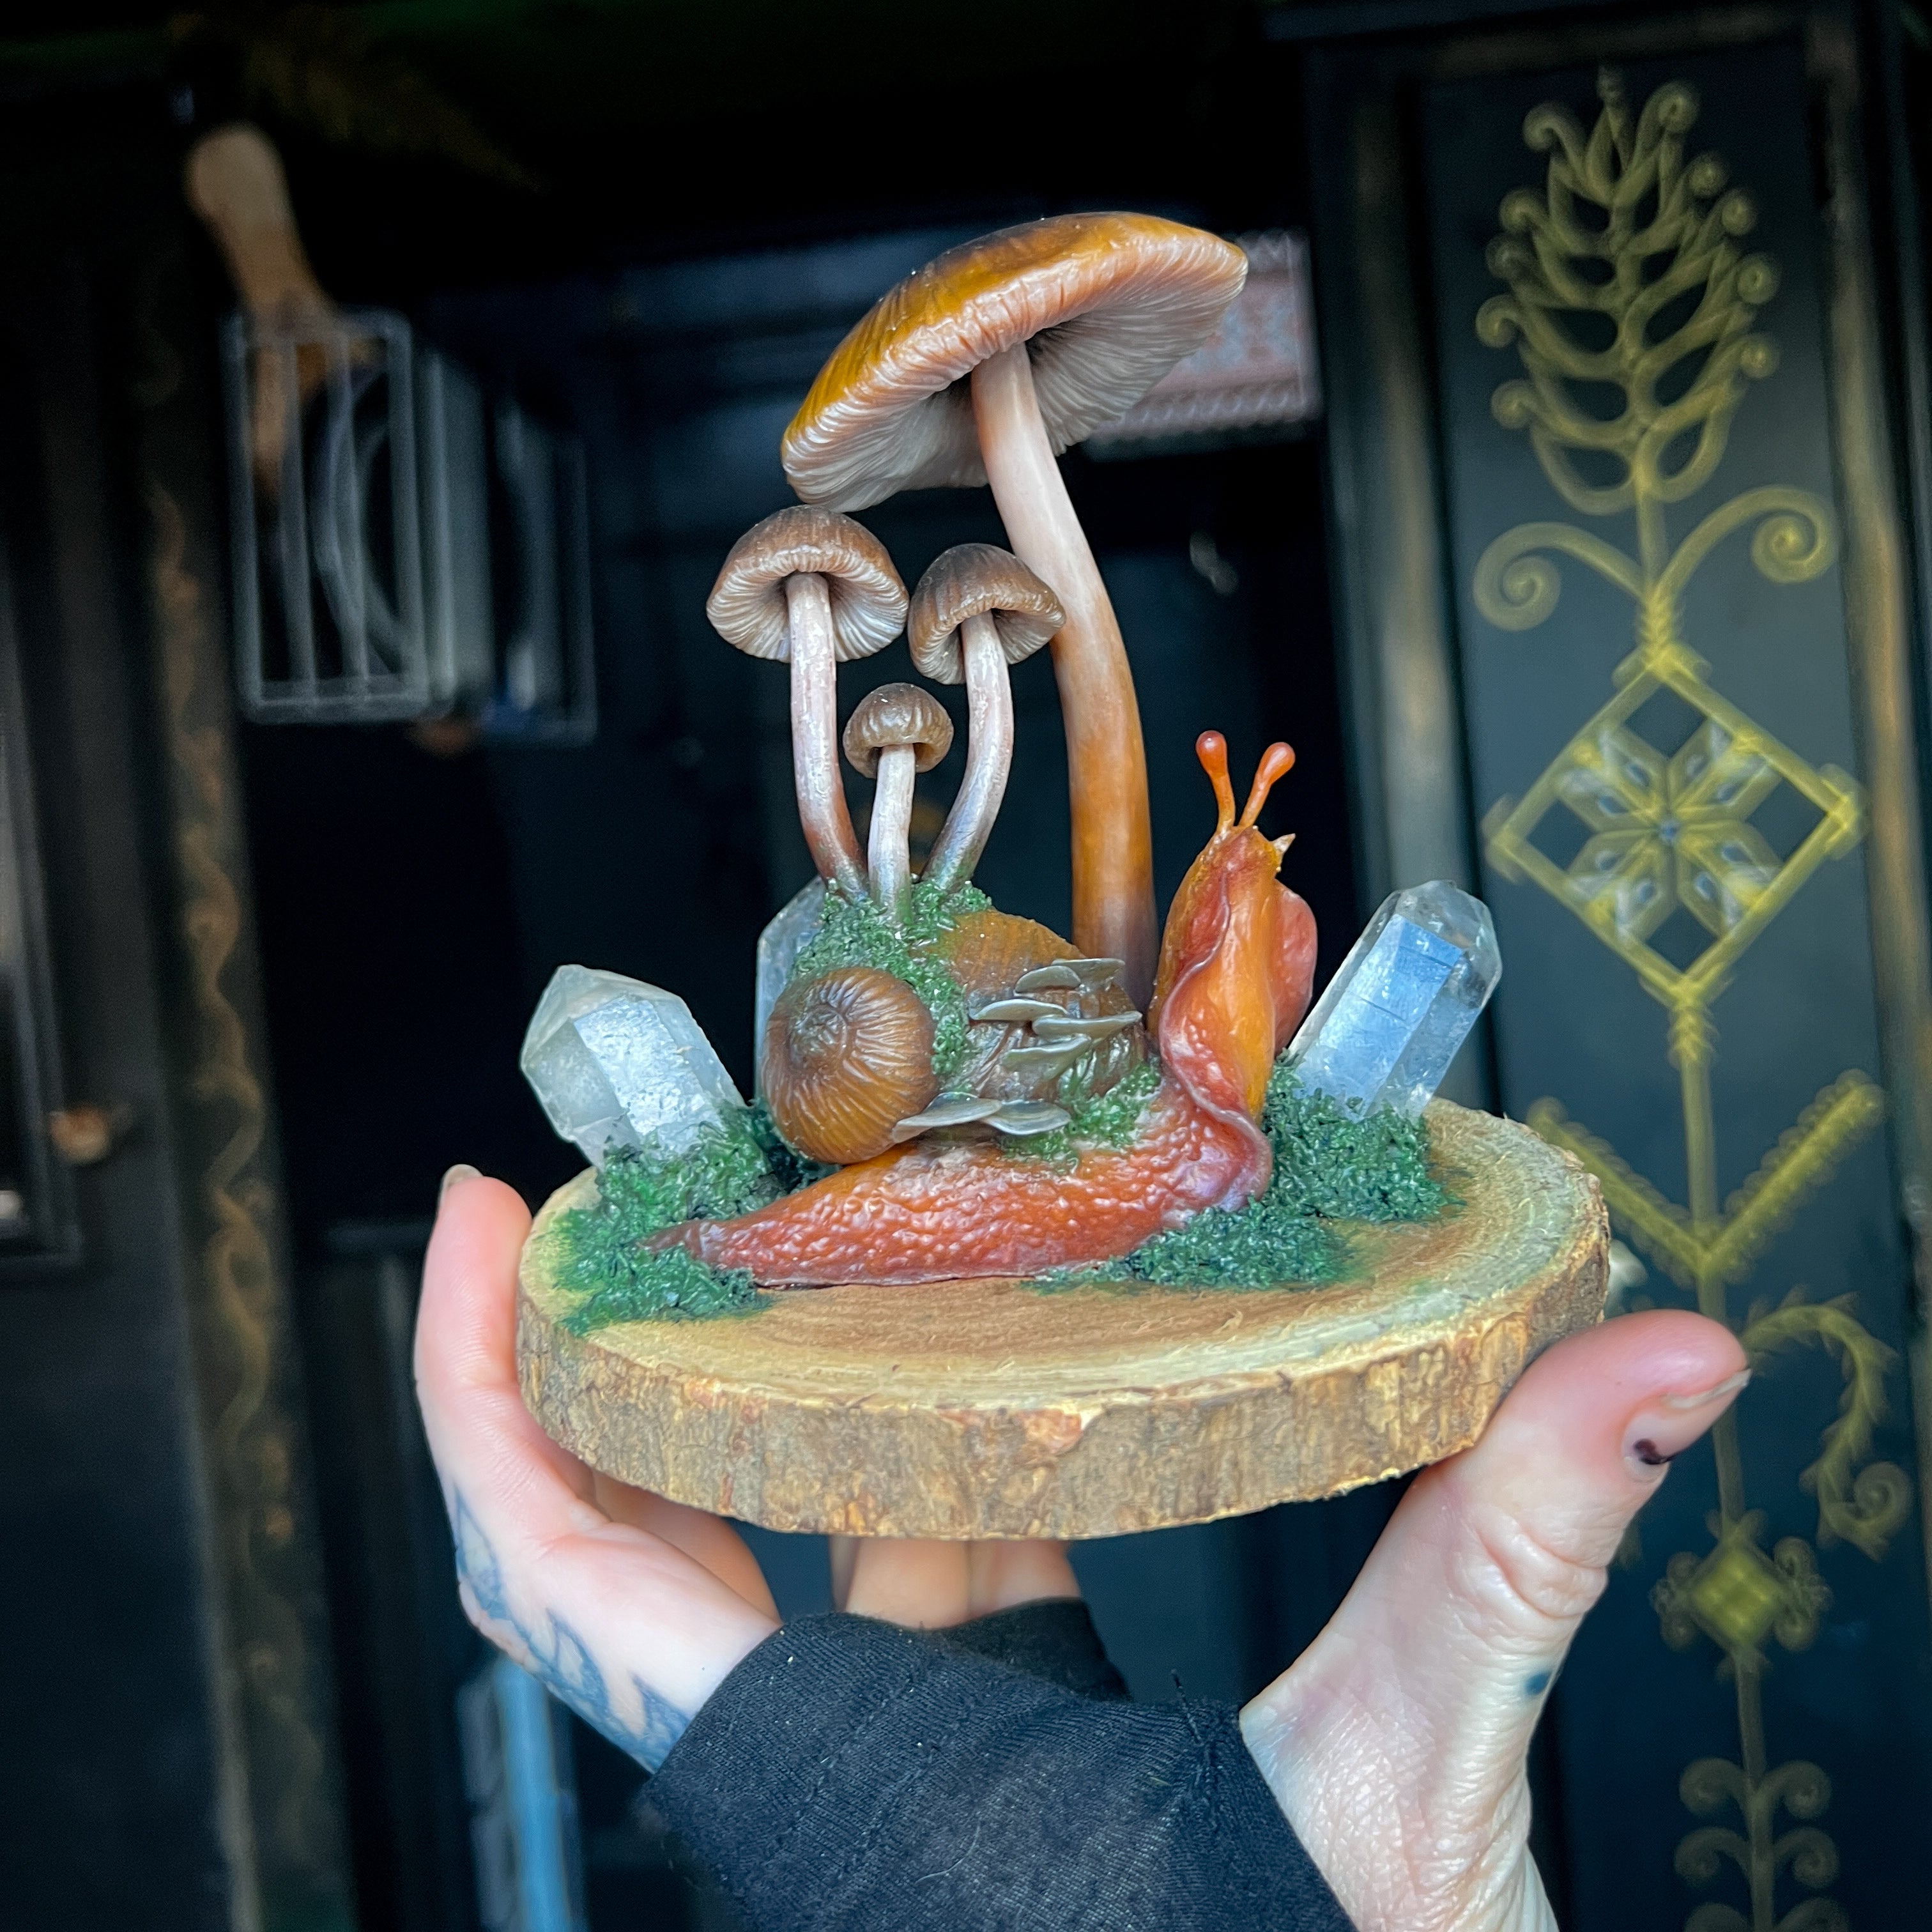 Snail & Mushroom Sculpture